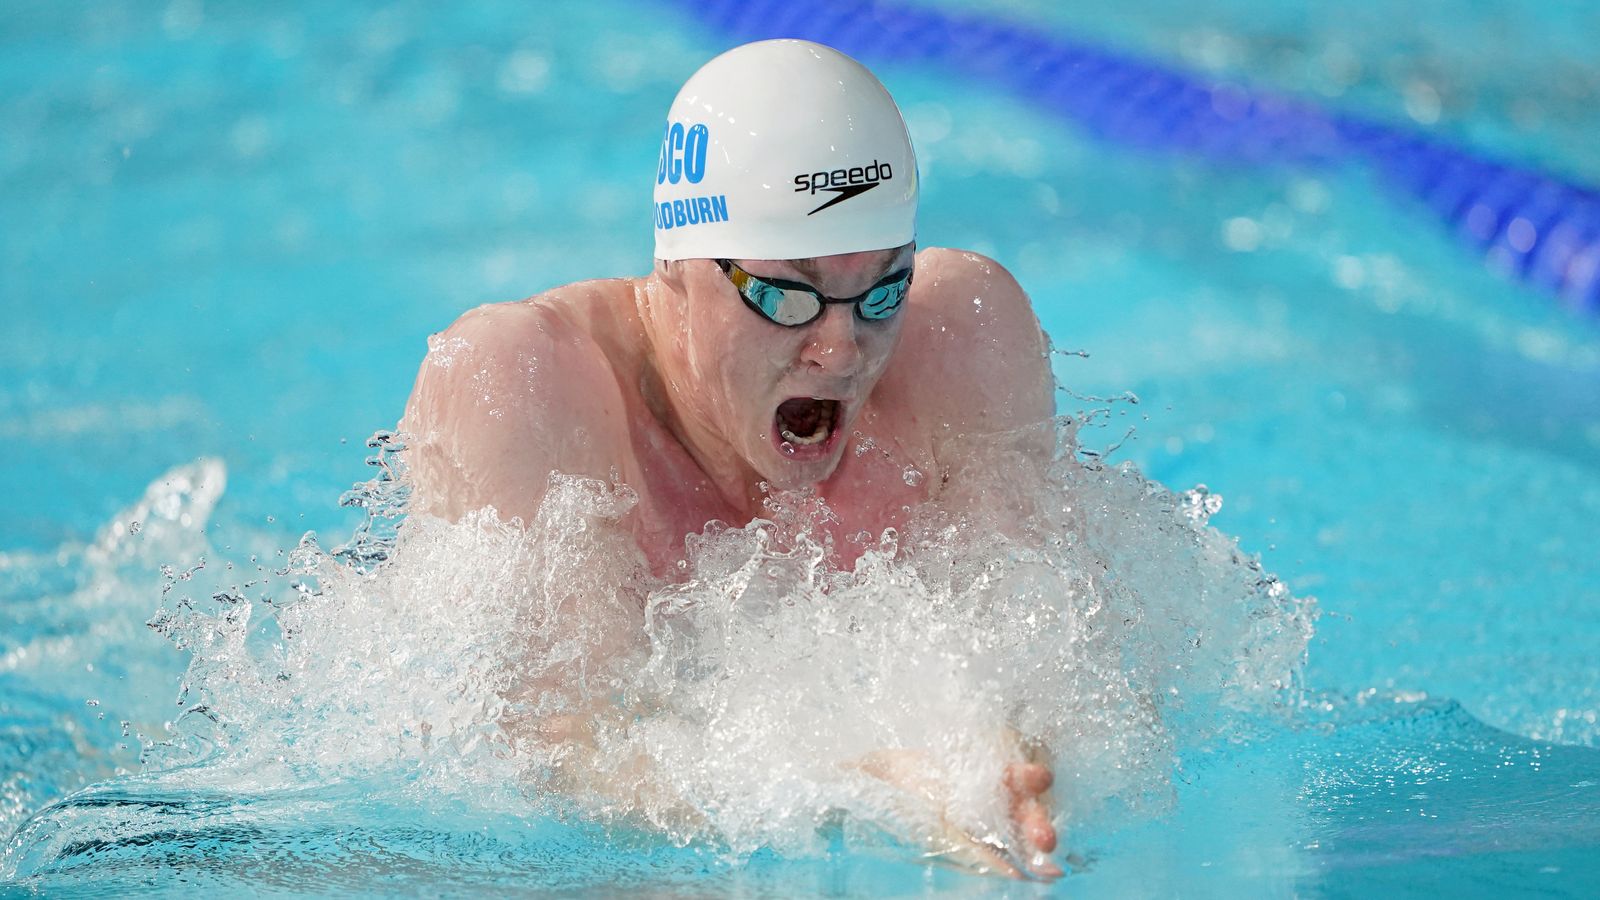 Le nageur britannique Archie Goodburn, 22 ans, est atteint d’un cancer du cerveau incurable | UK News